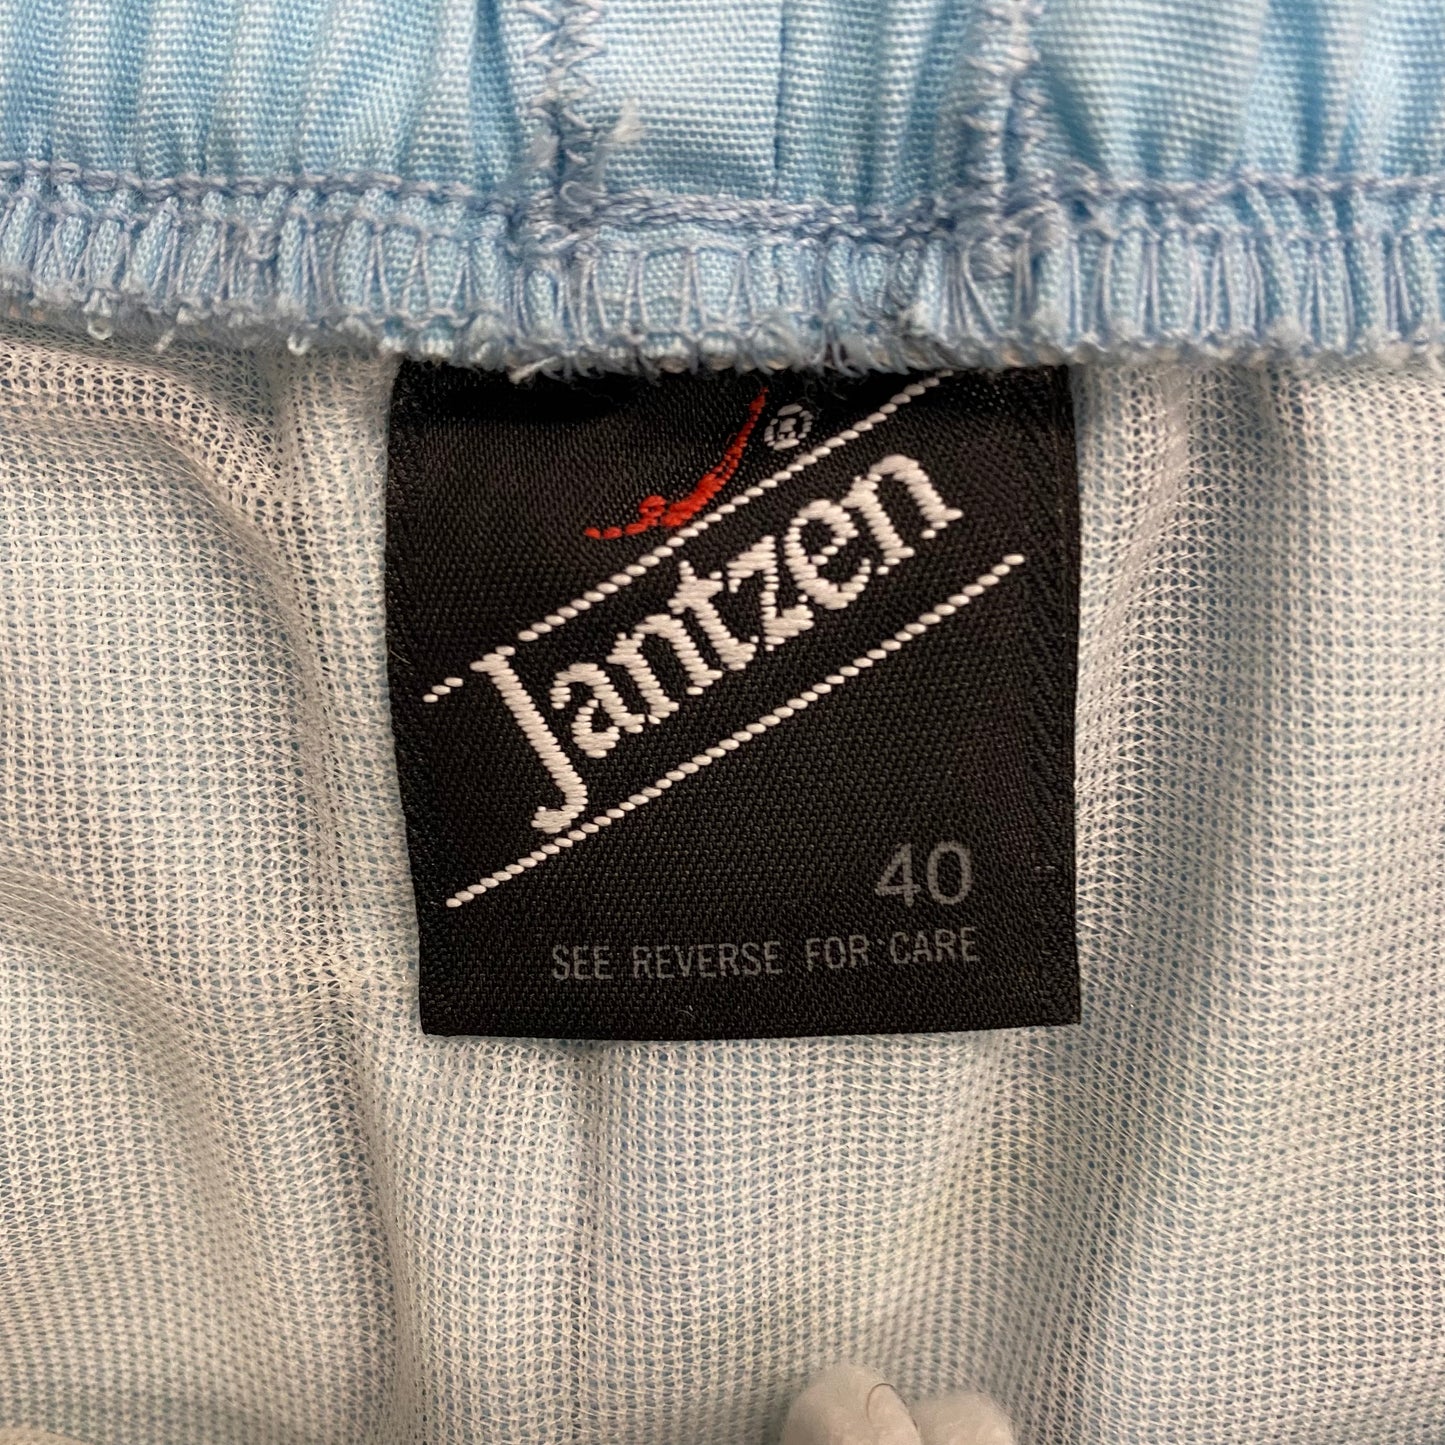 Early 1980s Jantzen Light Blue Shorts/Trunks - Size Large